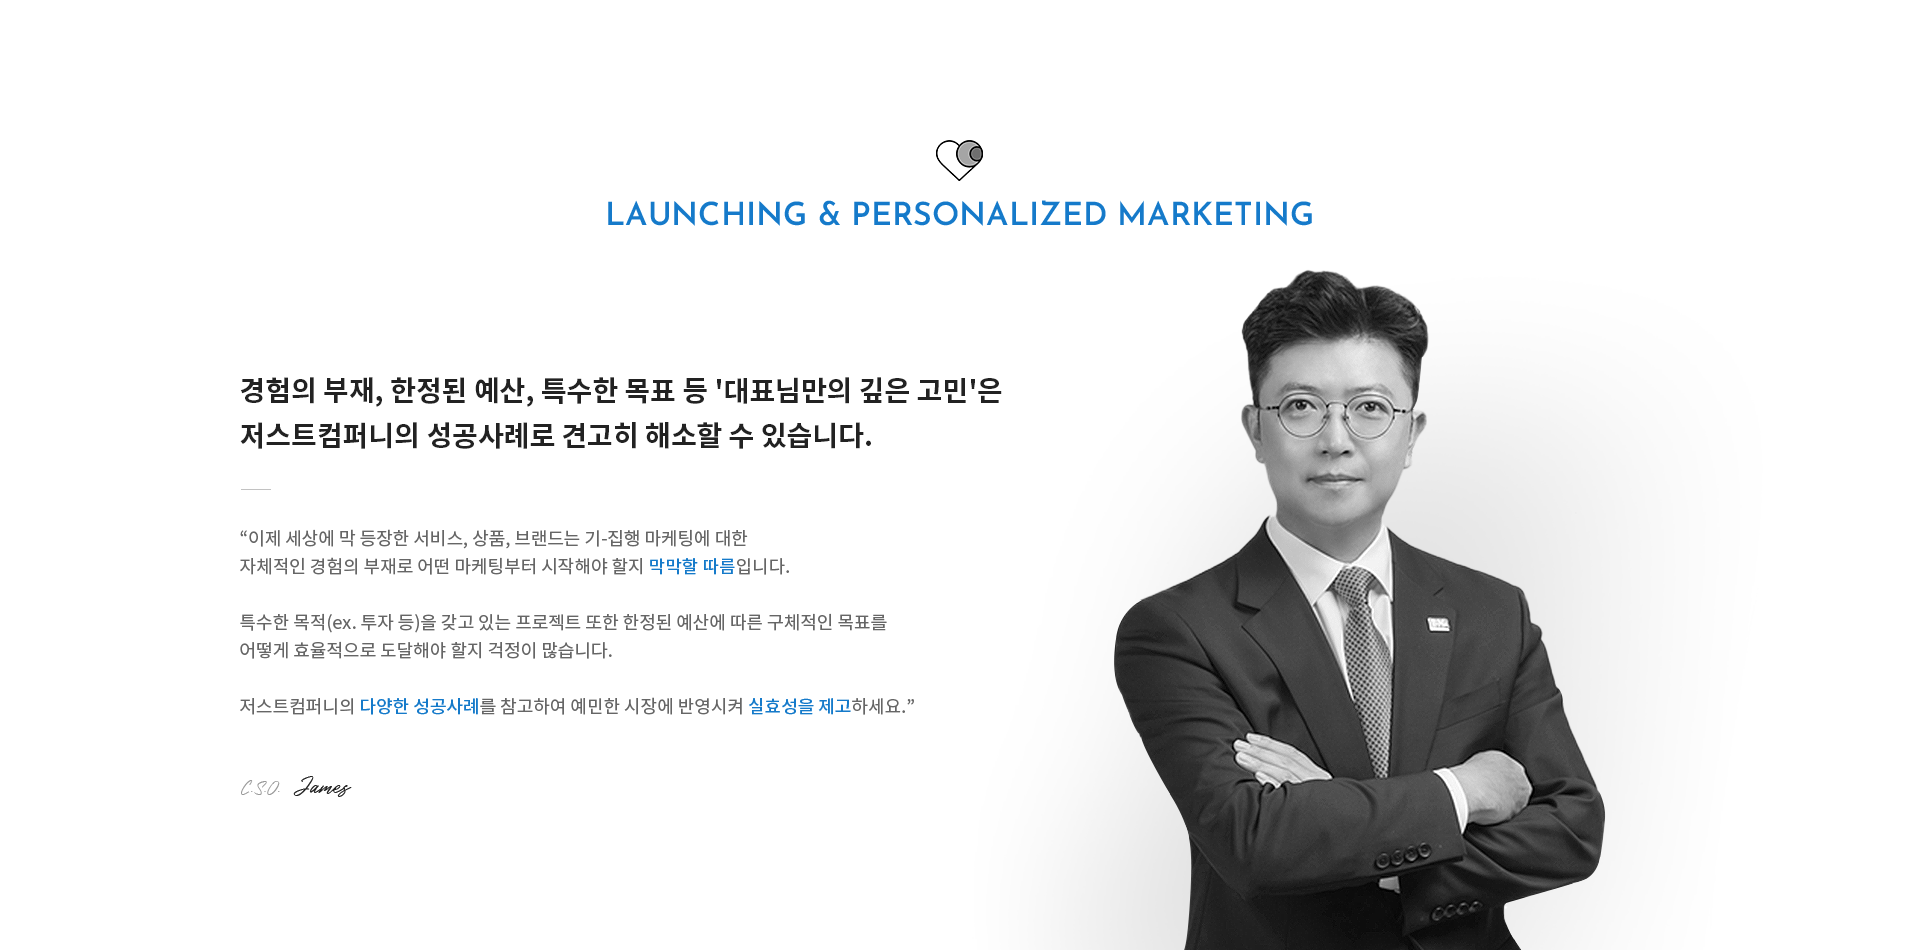 Launching & Personalized Marketing